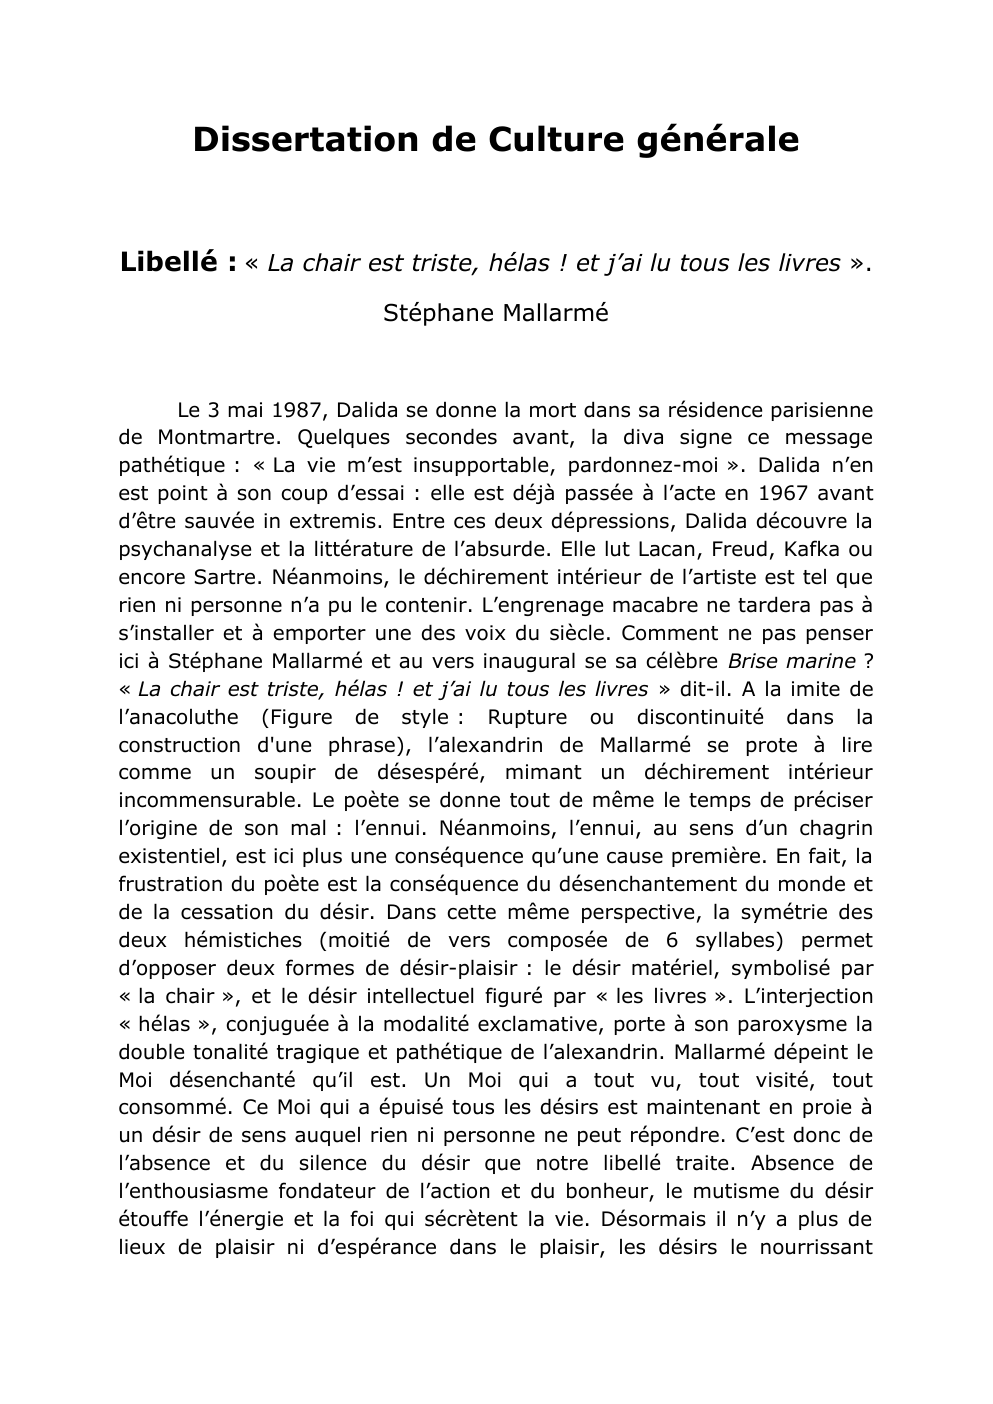 Prévisualisation du document « La chair est triste, hélas ! et j’ai lu tous les livres ». Stéphane Mallarmé